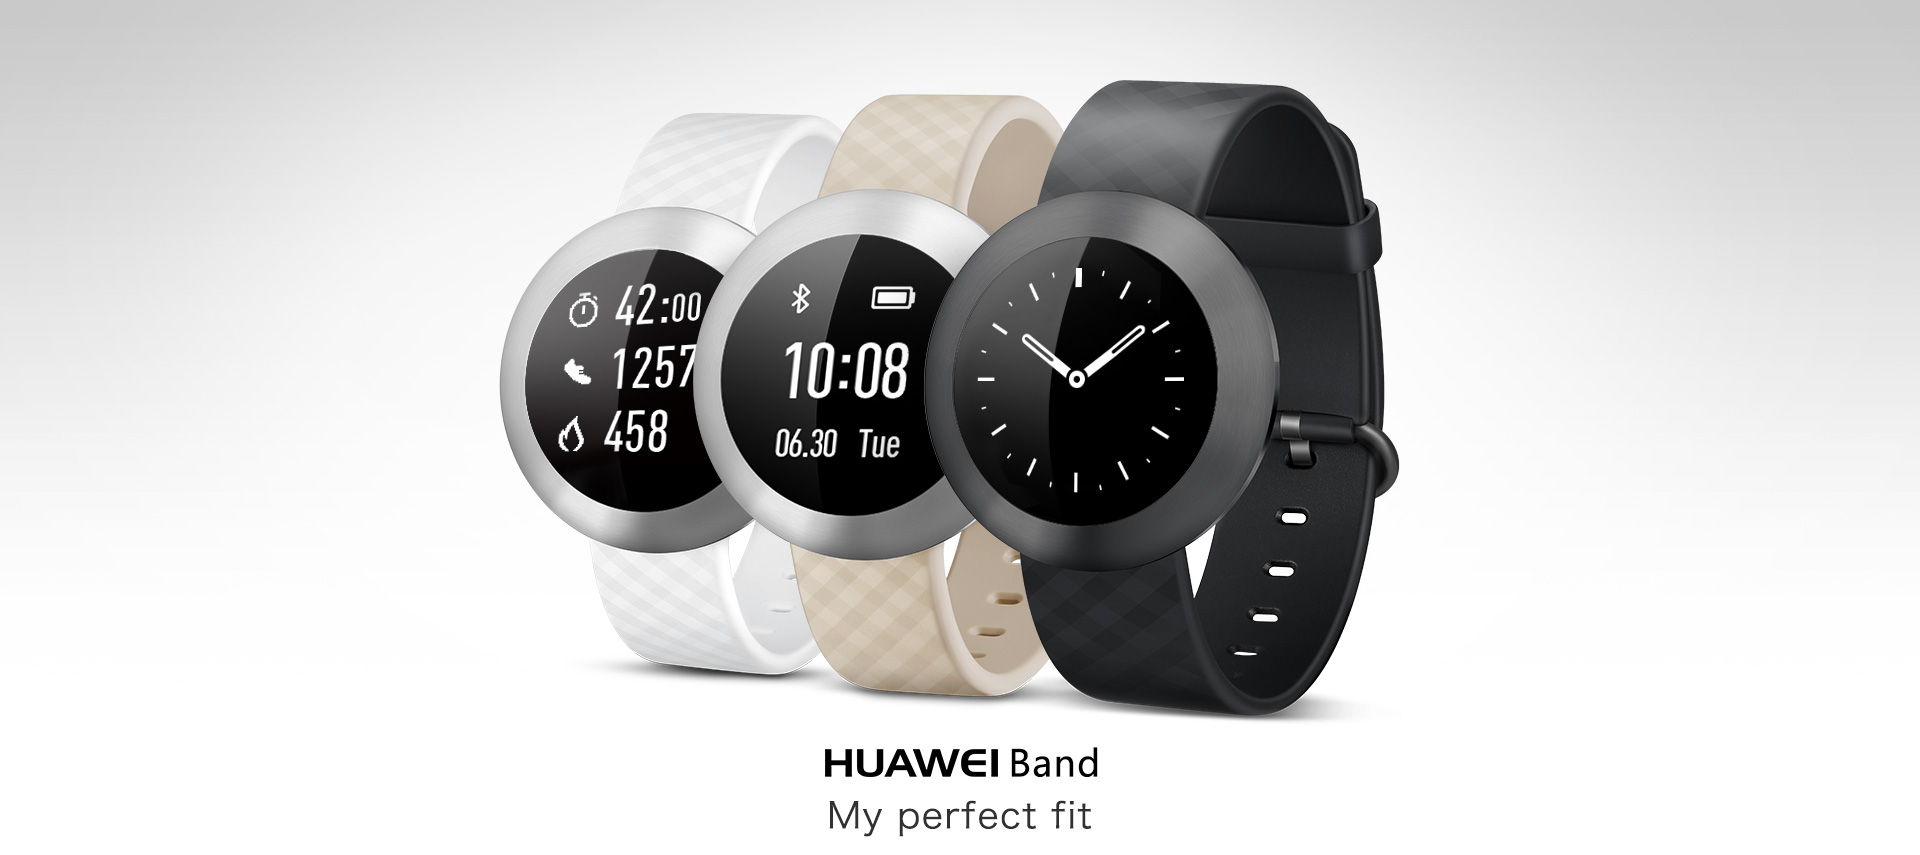 Хуавей бэнд 8. Часы Хуавей бэнд 8. Huawei Band 1. Умные часы Huawei Band 8. Установить часы huawei band